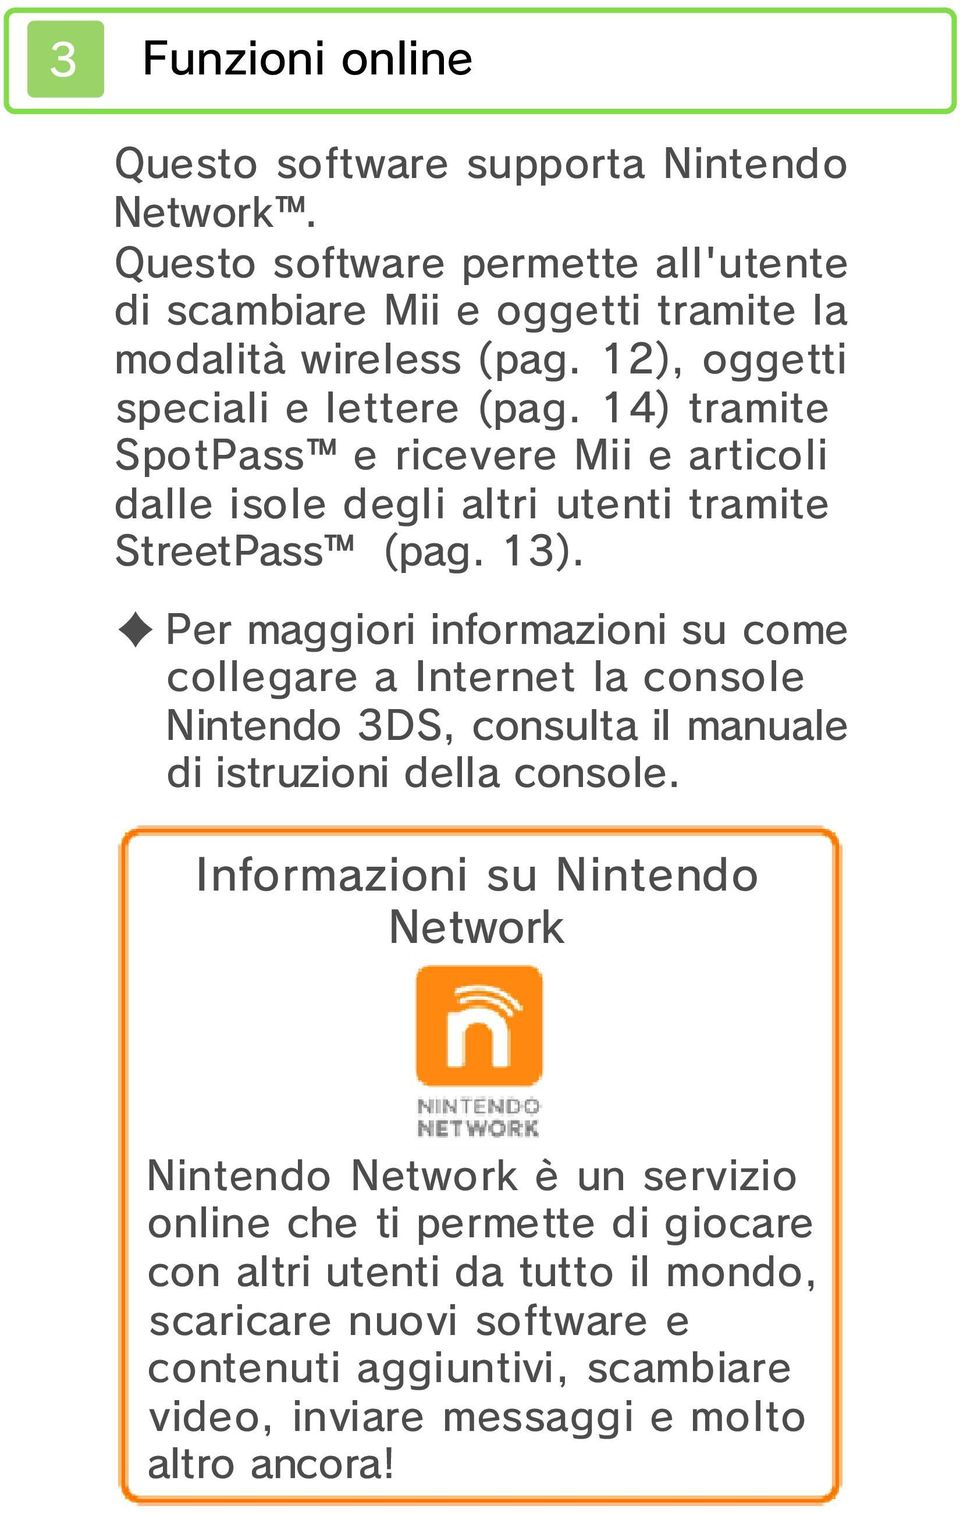 Per maggiori informazioni su come collegare a Internet la console Nintendo 3DS, consulta il manuale di istruzioni della console.